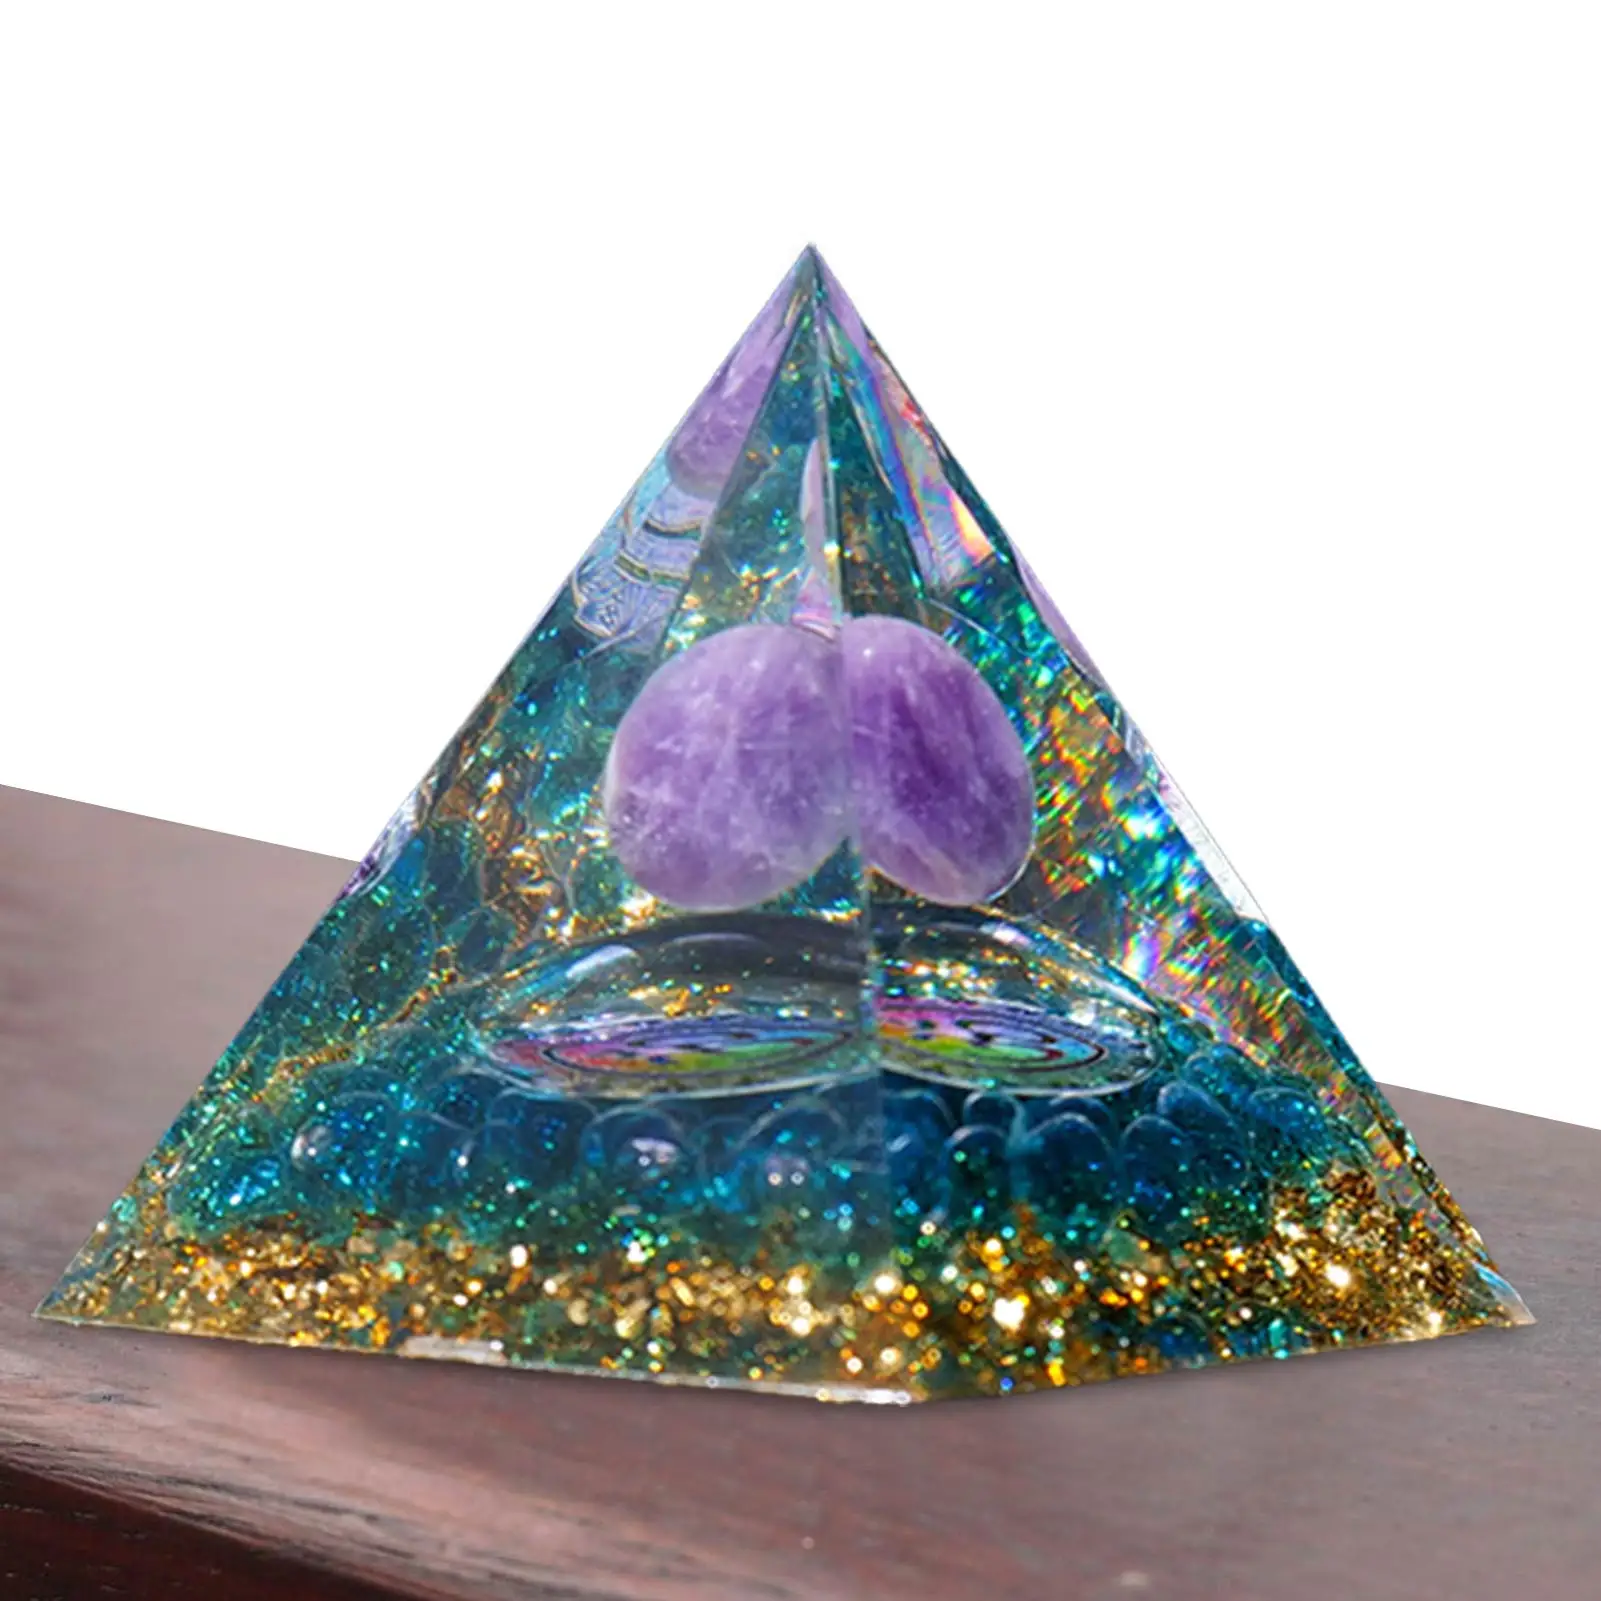 

Пирамида кристалл Радуга планеты настольные украшения новая вдохновляющая Пирамида кристалл приносит положительную энергию и удачи Исцел...